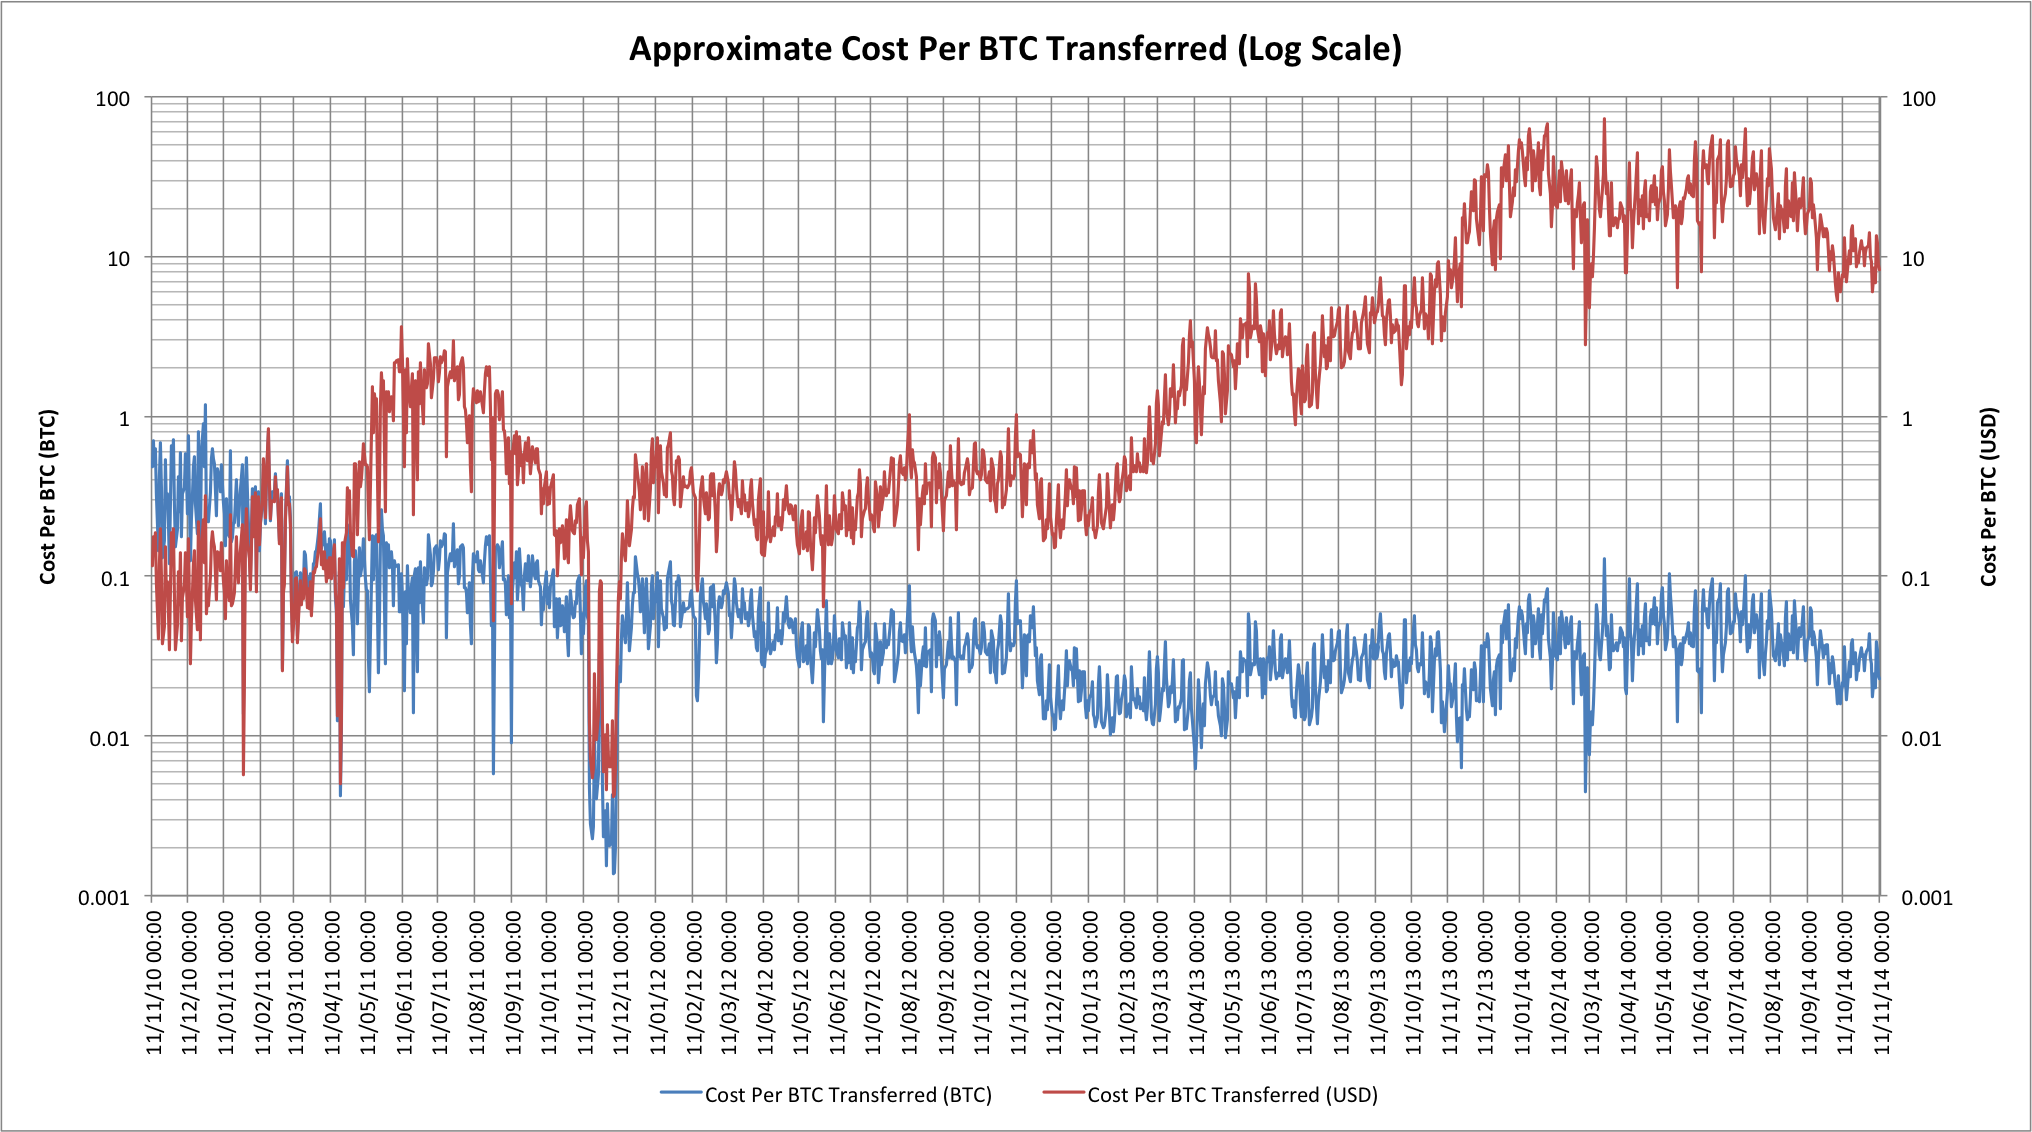 Estimated cost per BTC transferred